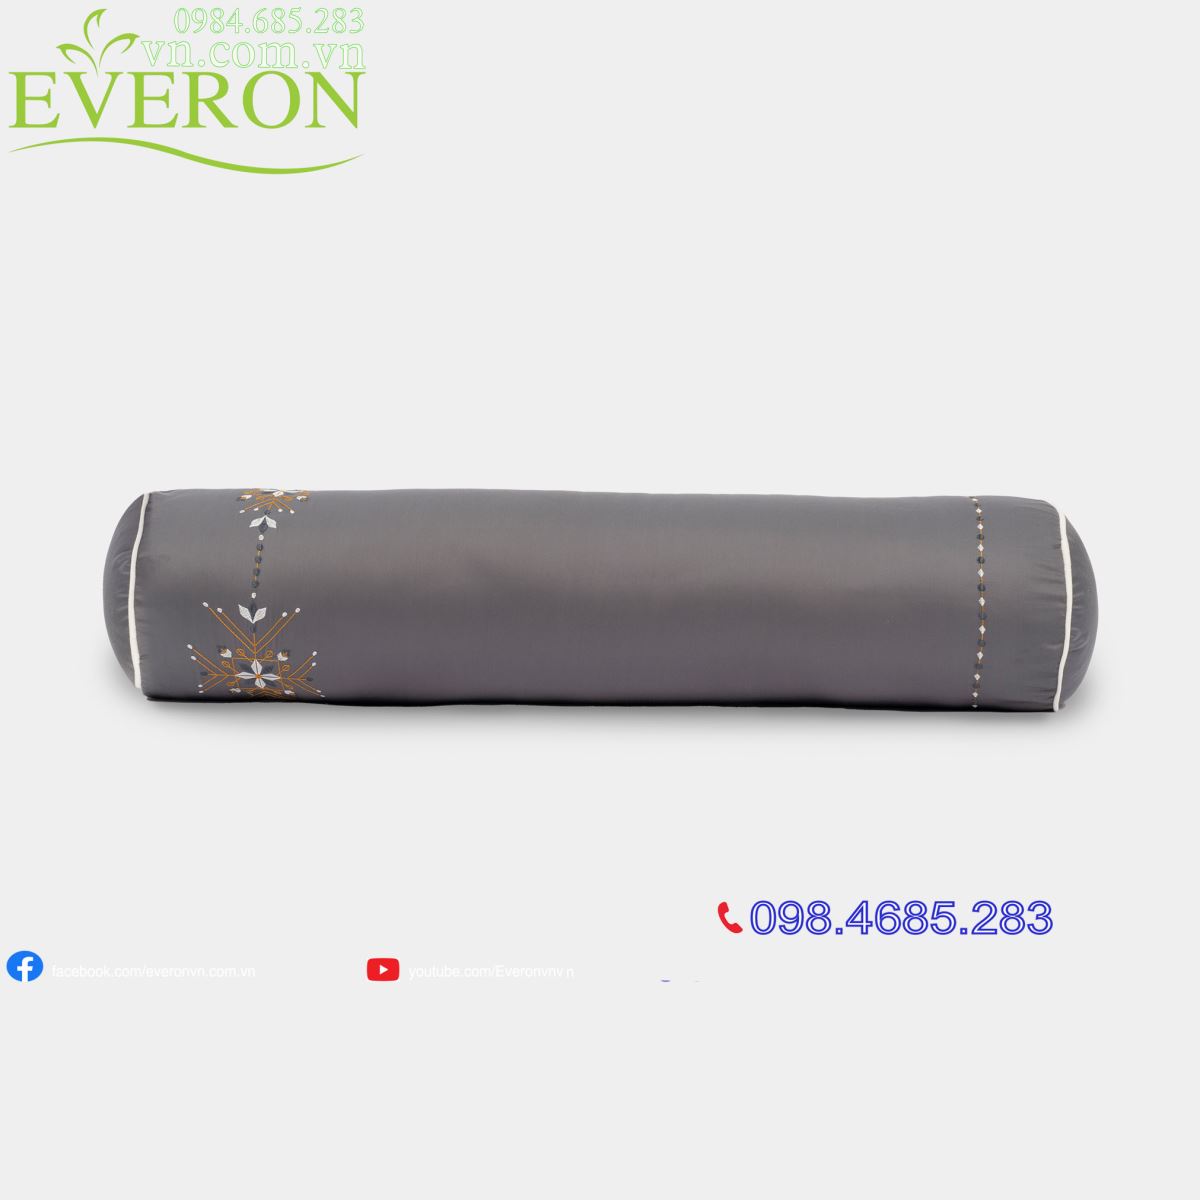 Vỏ Gối Ôm Everon EST-24036